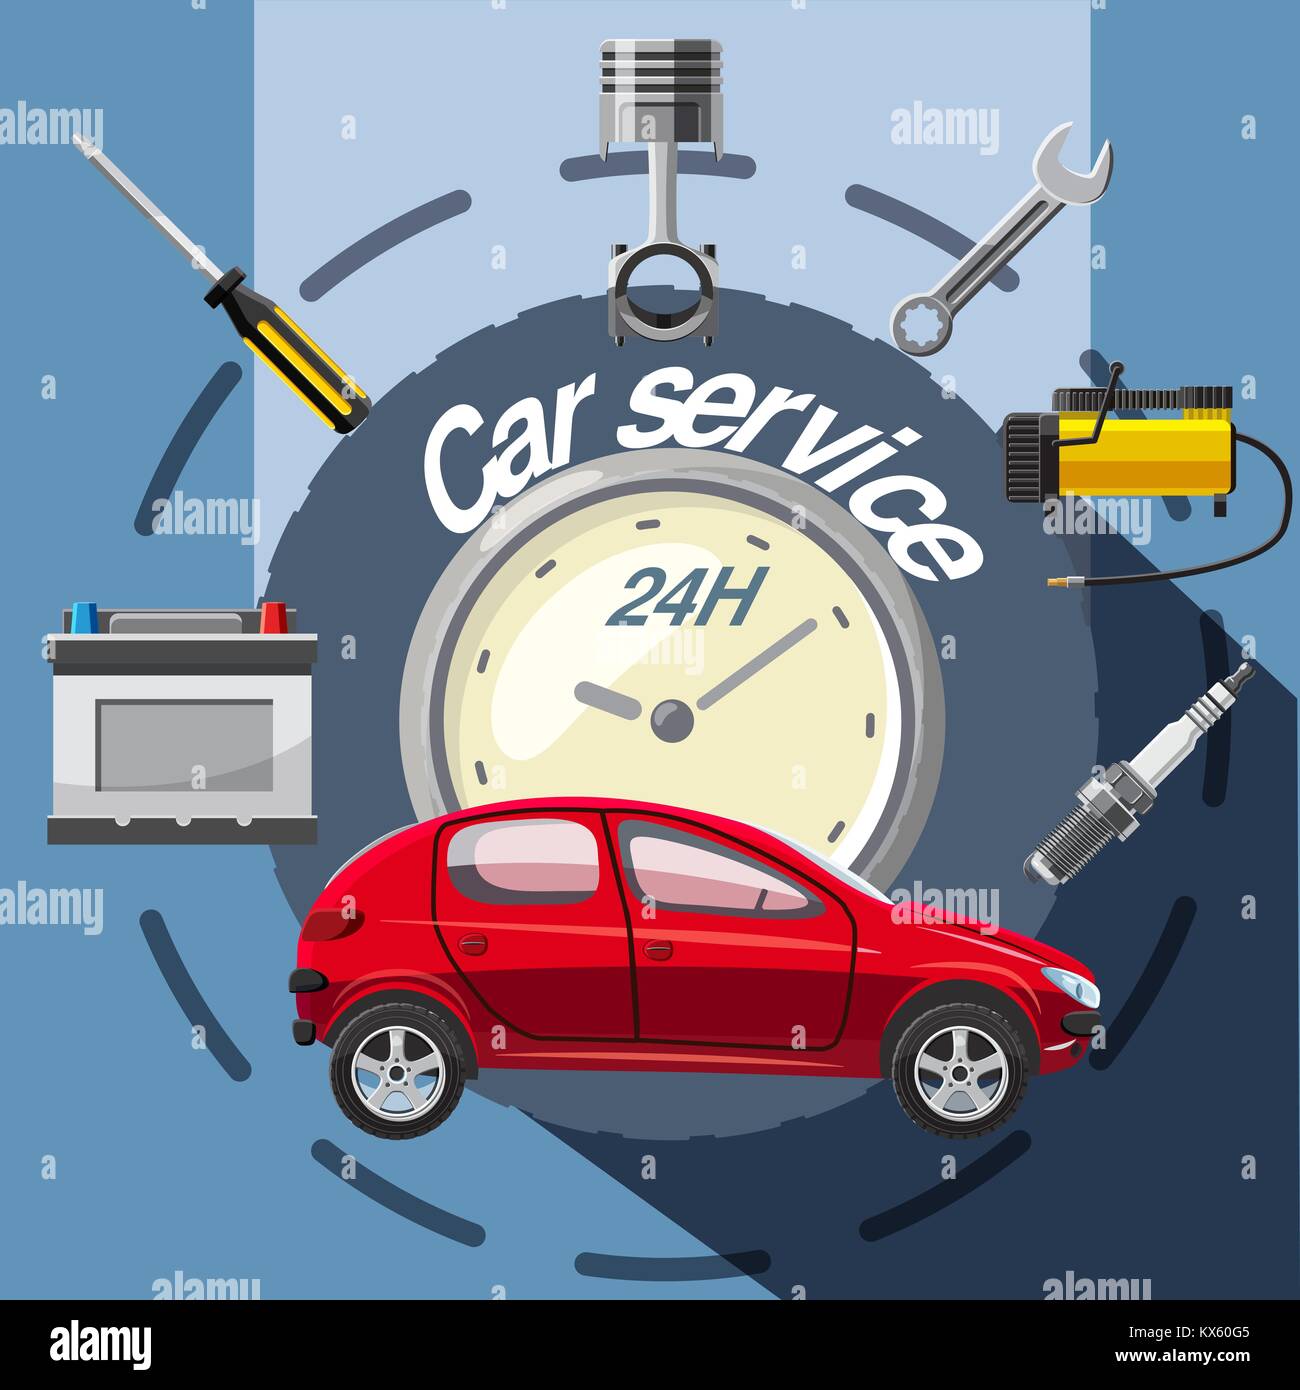 Piezas De Automóvil, Motor, Neumáticos Y Herramientas Del Coche Ilustración  del Vector - Ilustración de gasolina, transporte: 128316490